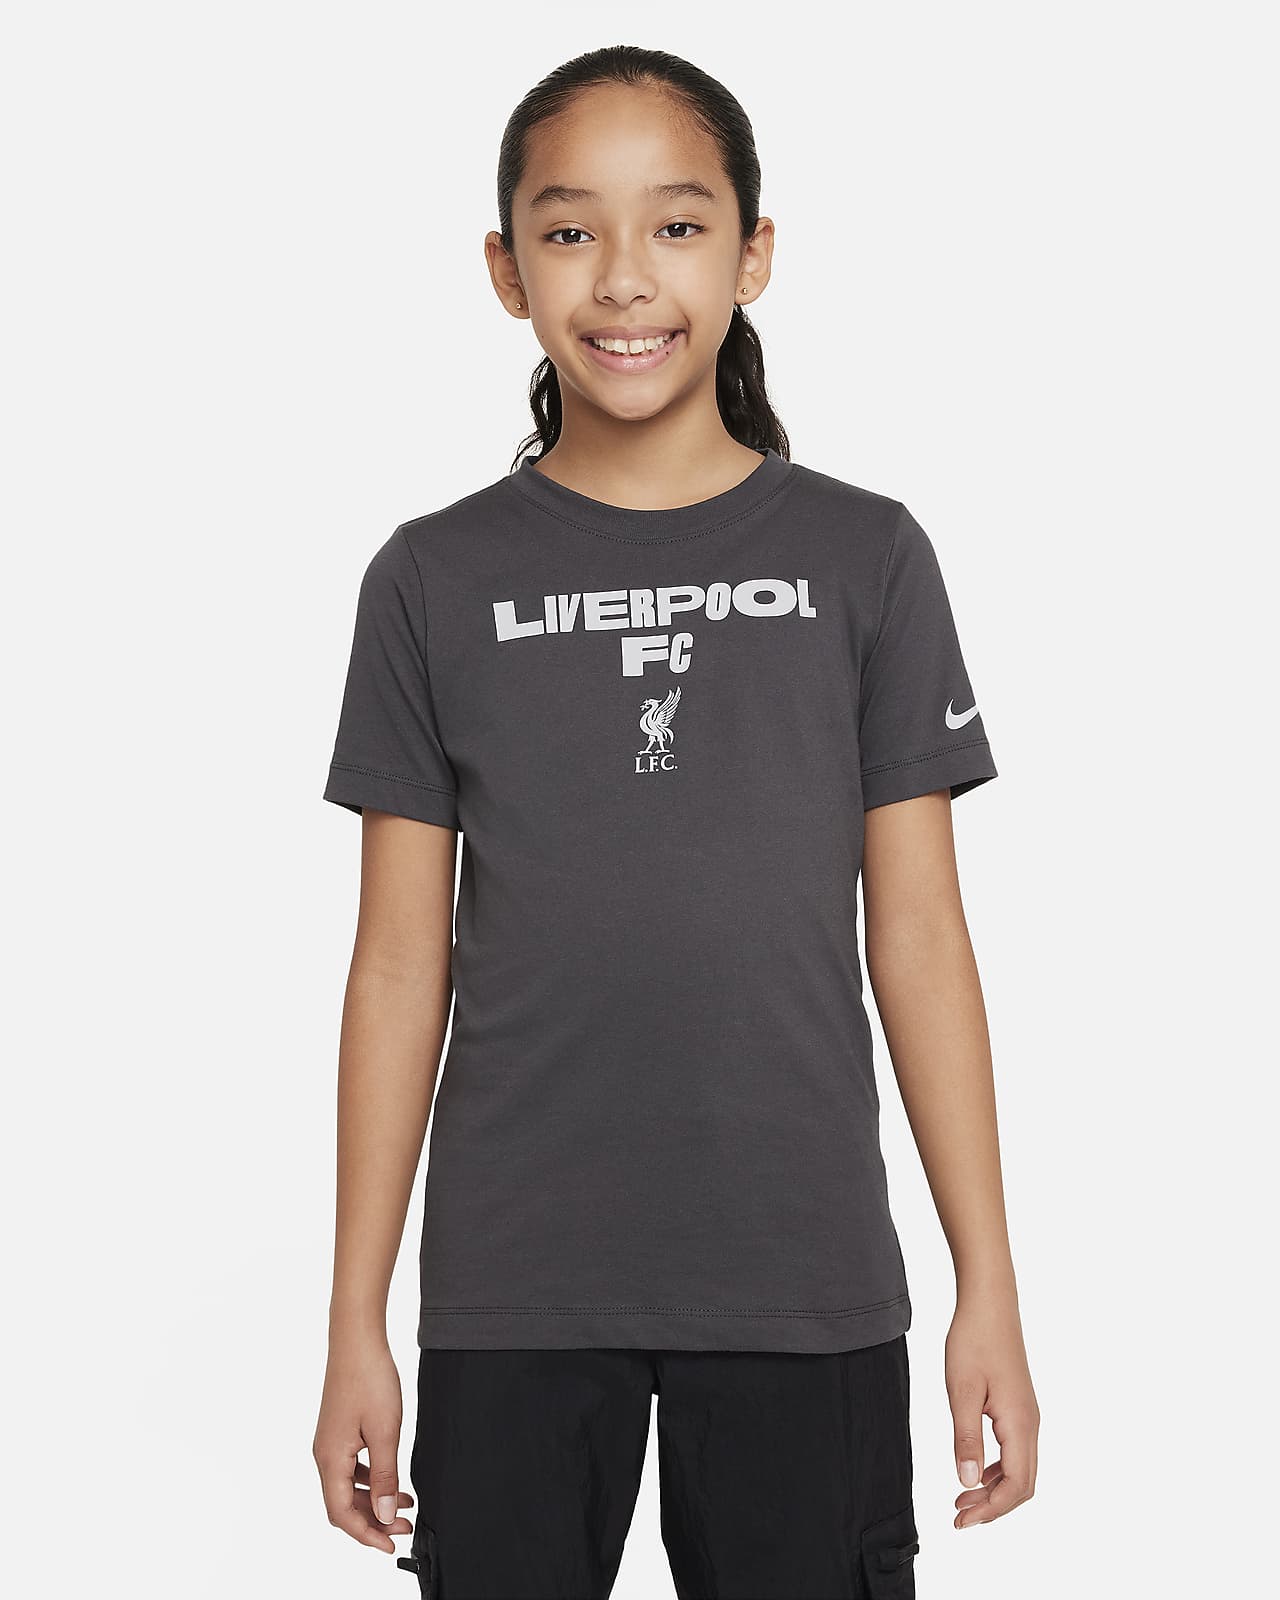 Liverpool FC Nike fotball-T-skjorte til store barn